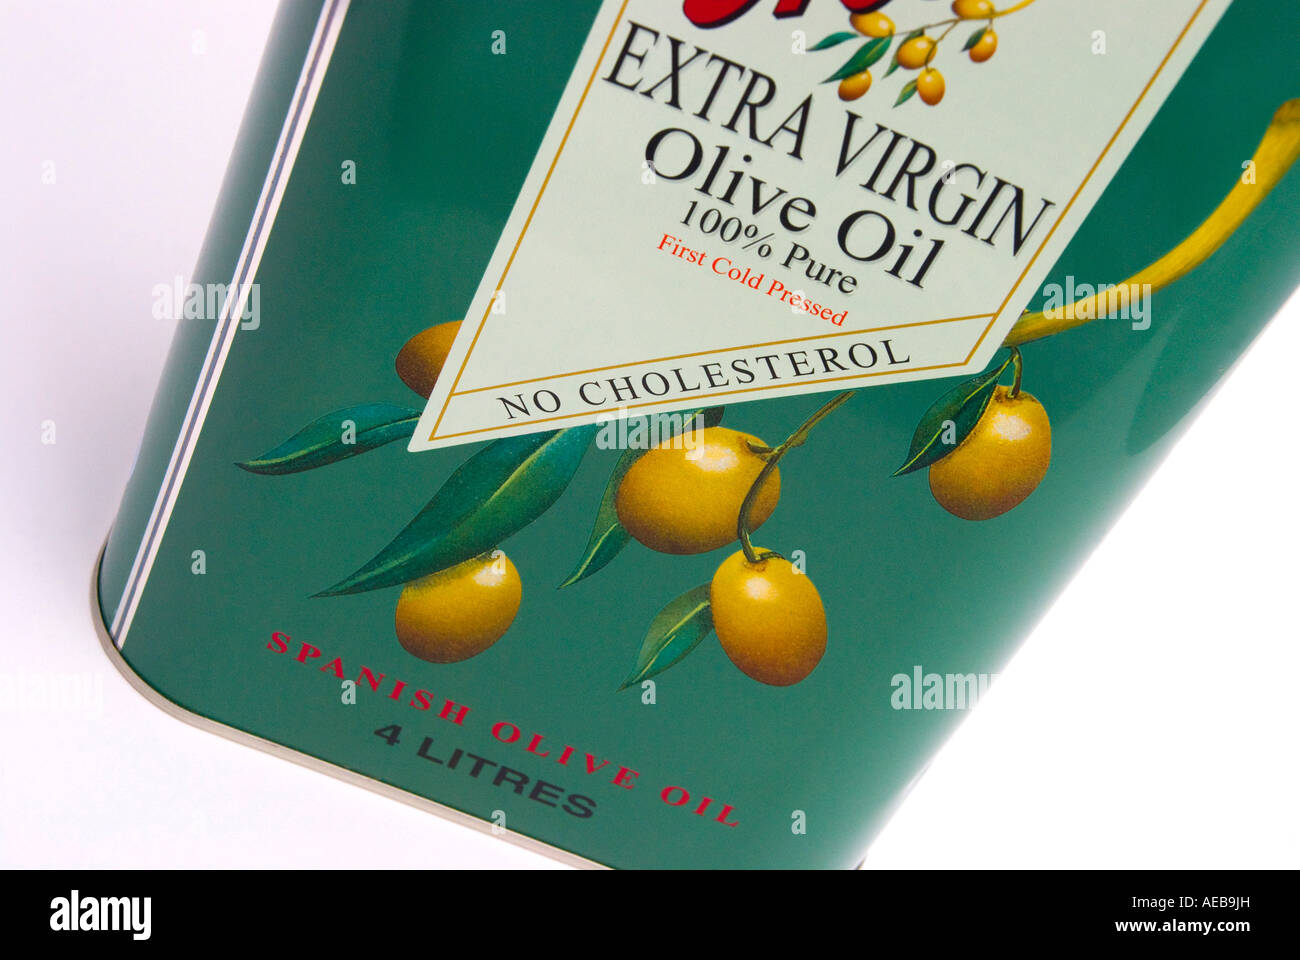 Aceite de oliva virgen extra de primera prensa en frío. Stock Photo